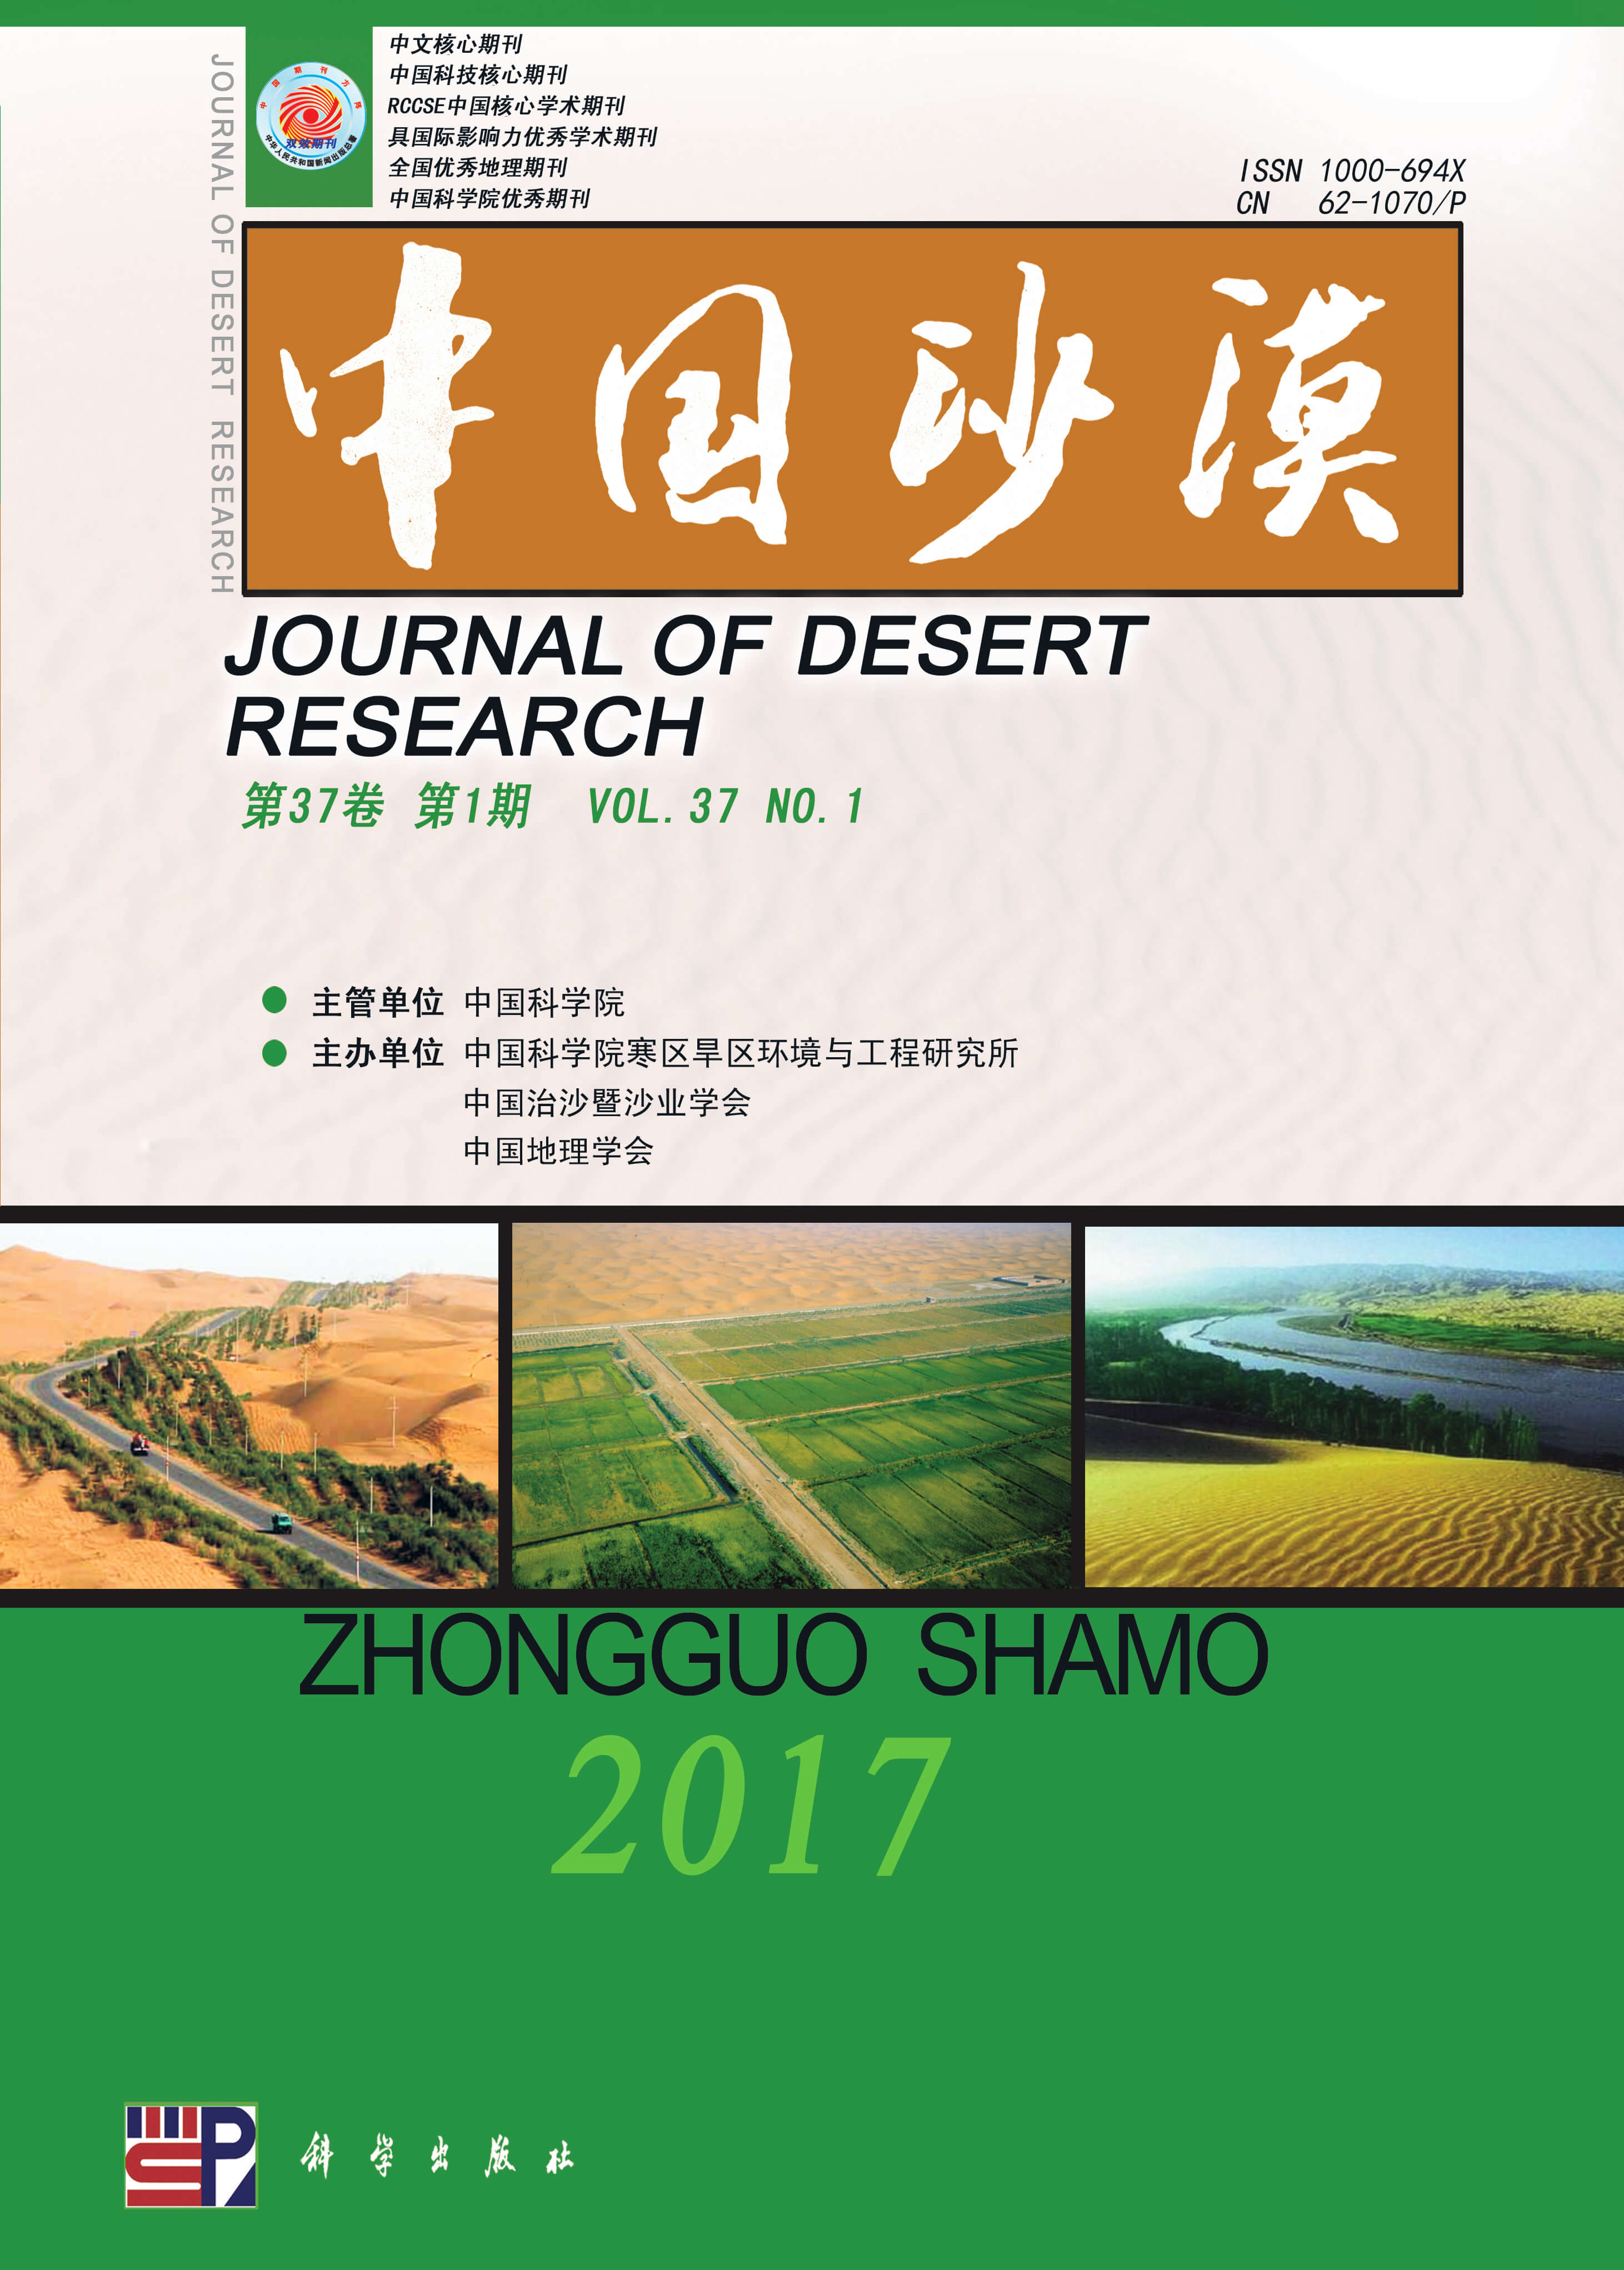 Journal of Desert Research